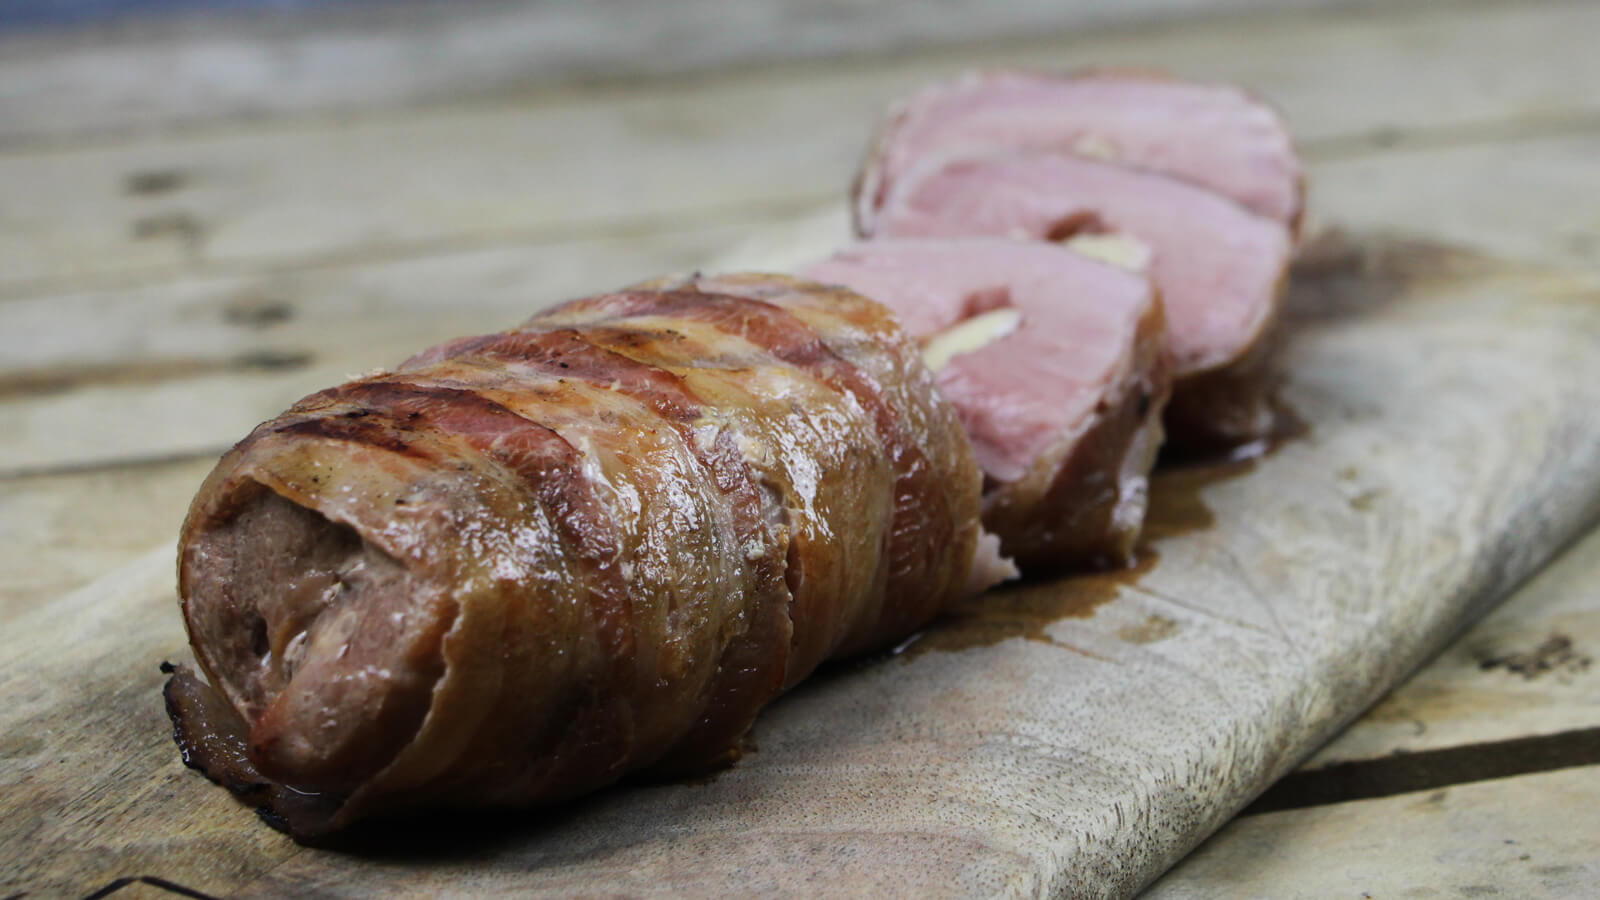 Op zoek naar een lekker BBQ recept? Deze gevulde varkenshaas van de BBQ is een goed idee!